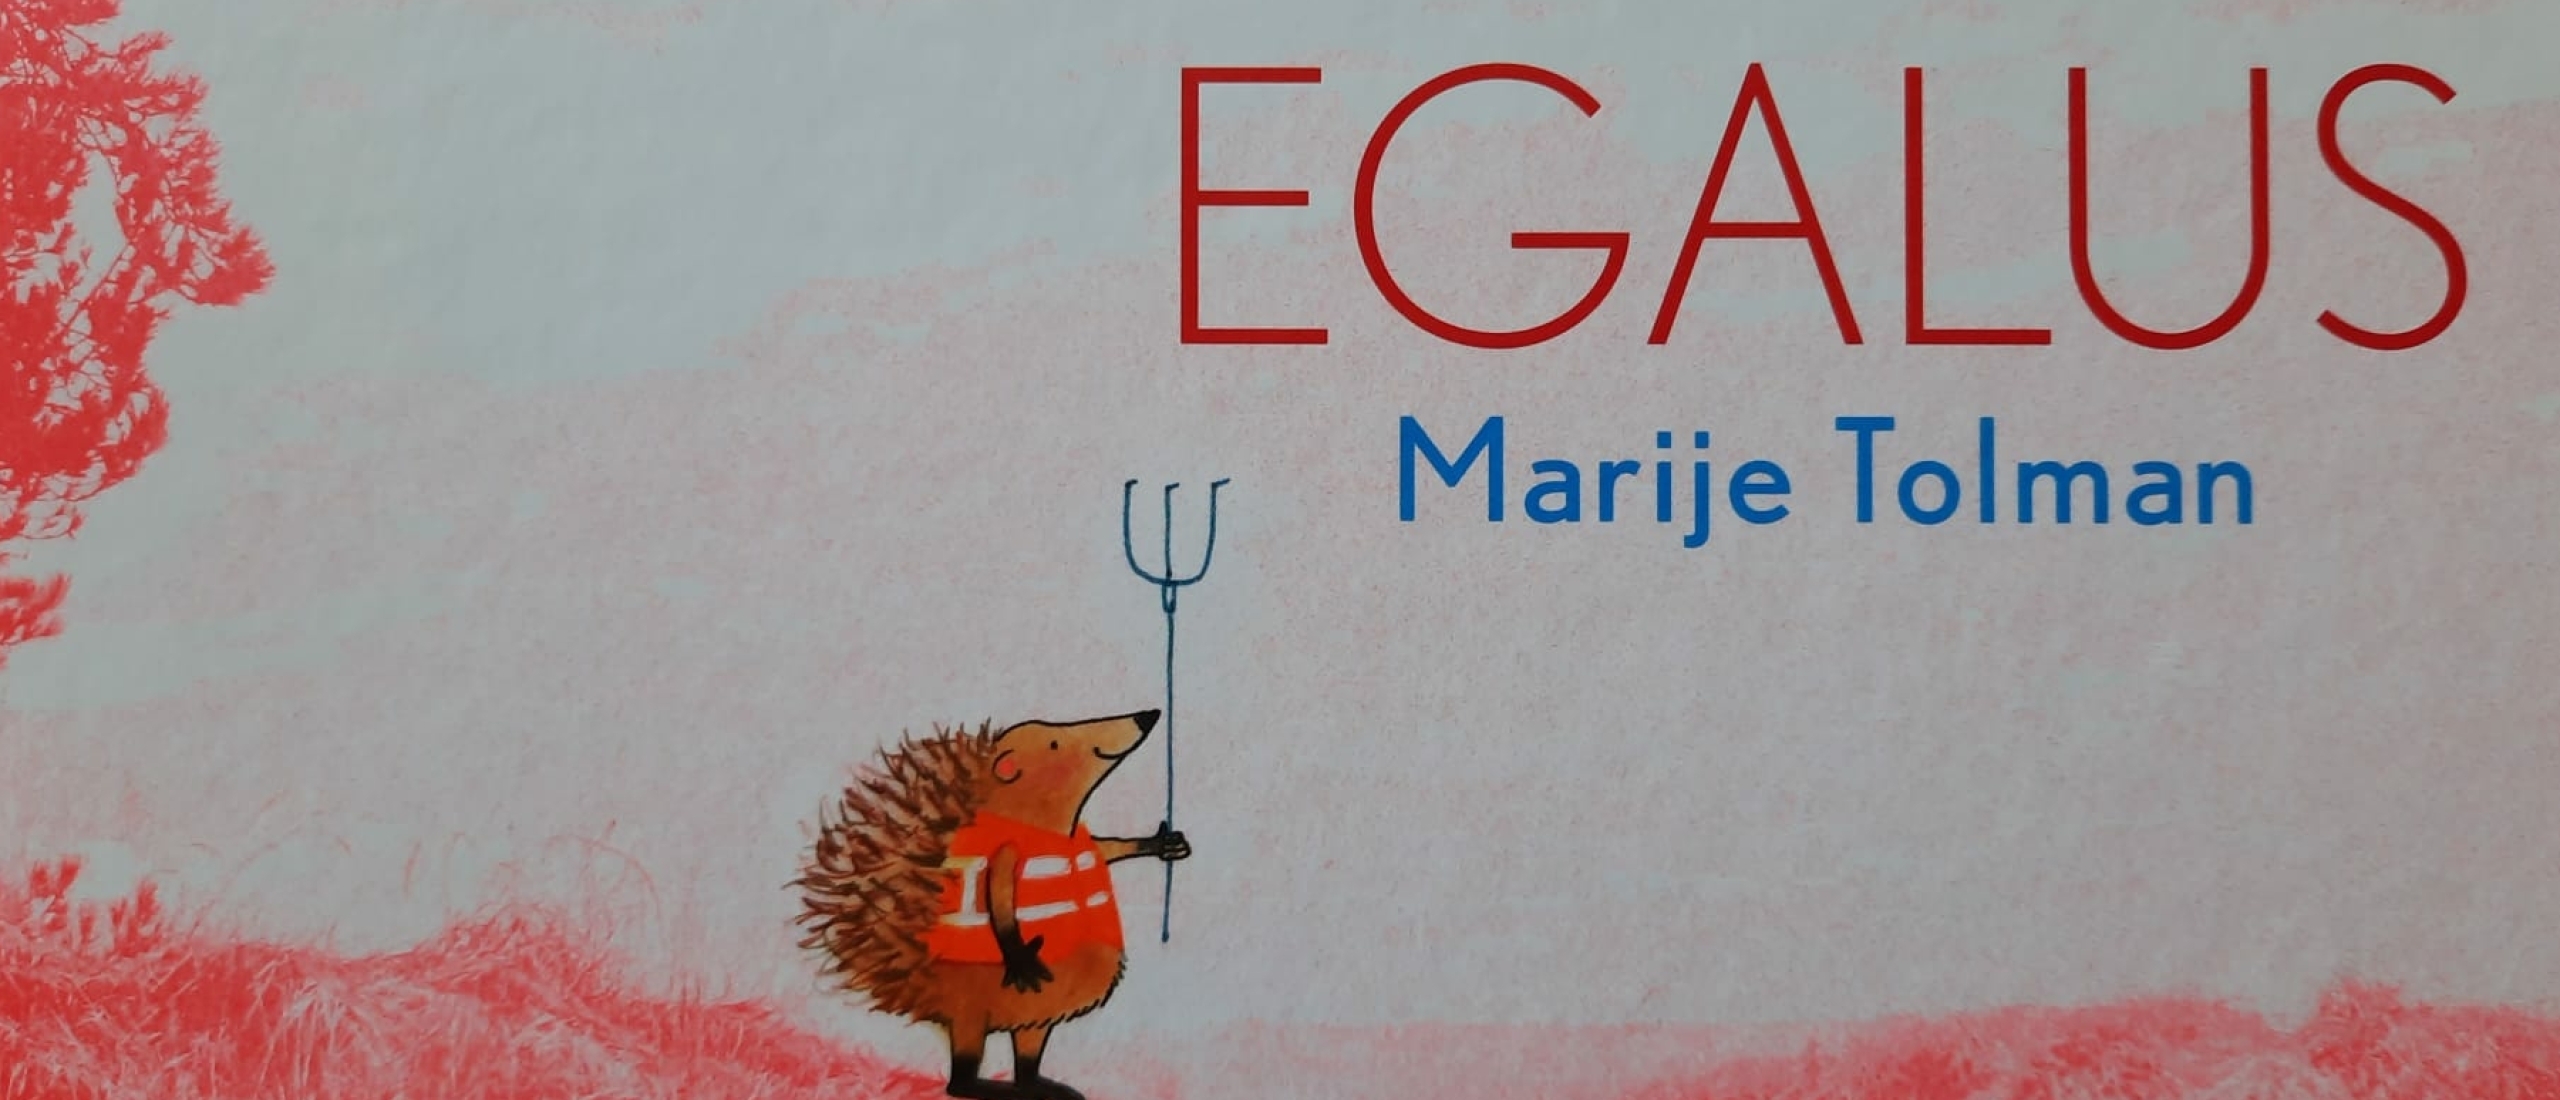 Boekbespreking Egalus (kinderboekenweek Gi-ga-groen)